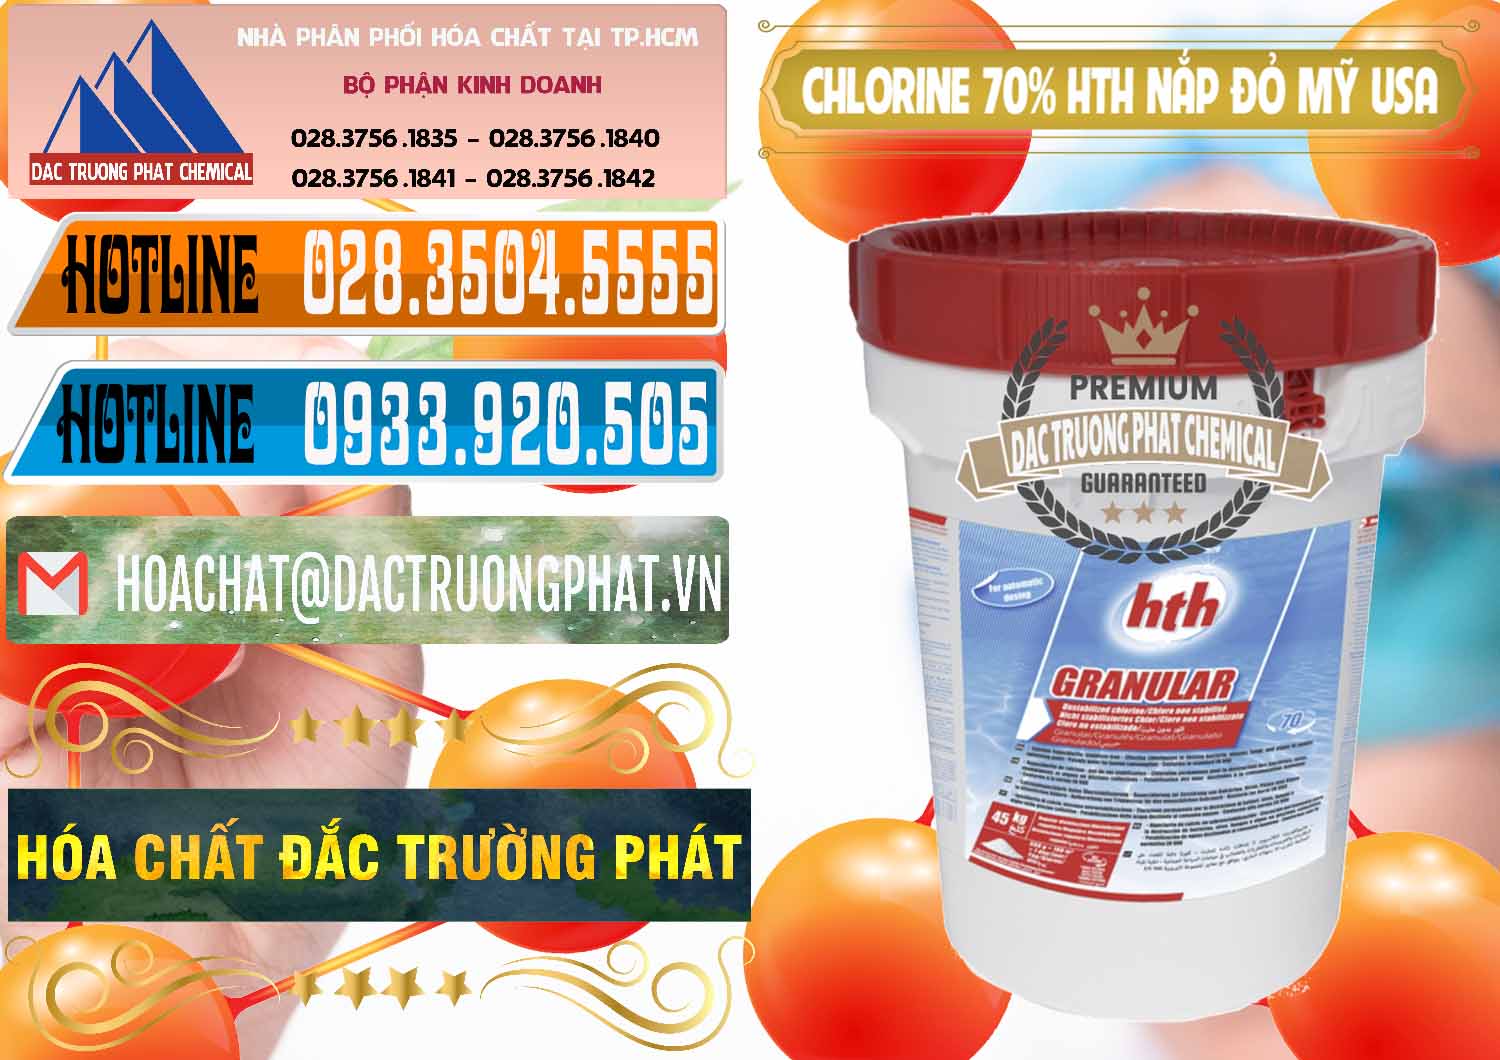 Nơi cung ứng - bán Clorin – Chlorine 70% HTH Nắp Đỏ Mỹ Usa - 0244 - Cung cấp và phân phối hóa chất tại TP.HCM - stmp.net